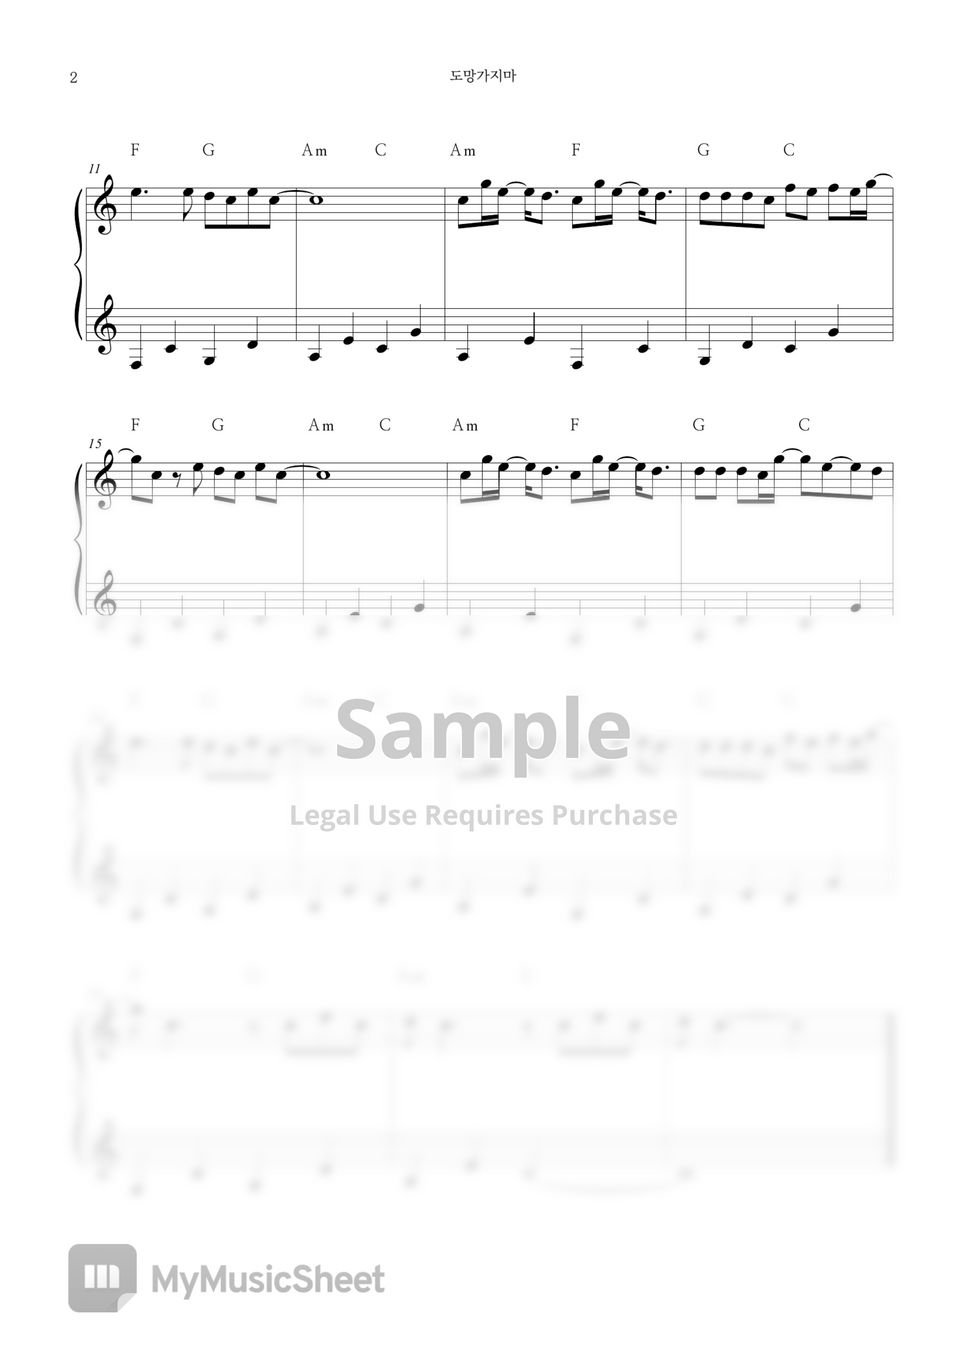 Motte - 'Don't run away' Easy Piano Sheet Music